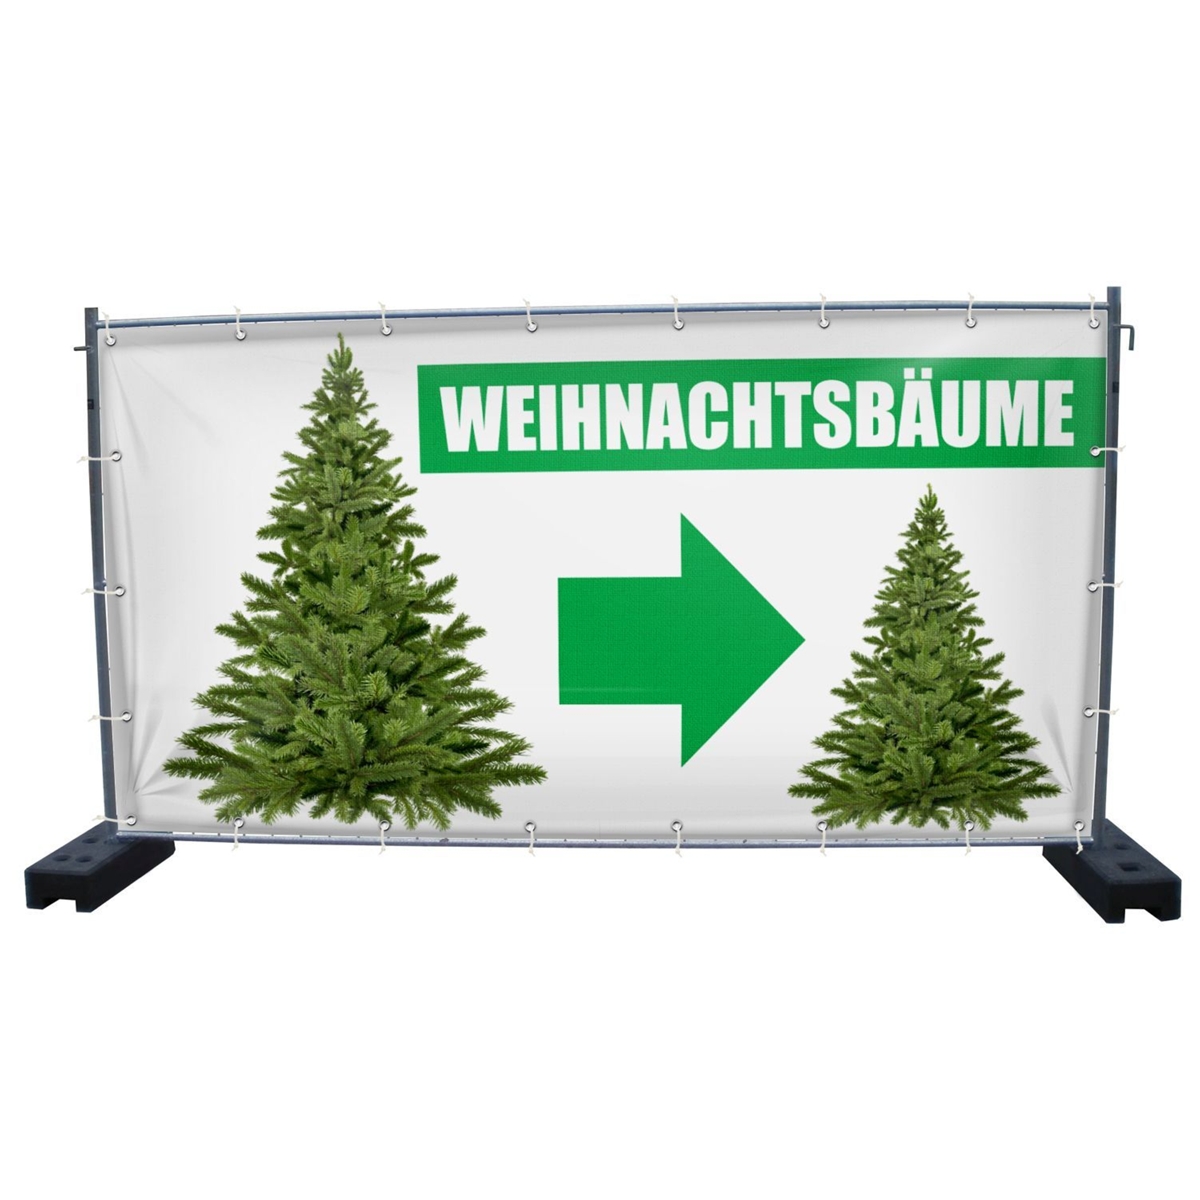 340 x 173 cm | Weihnachtsbaumverkauf Bauzaunbanner (2144)